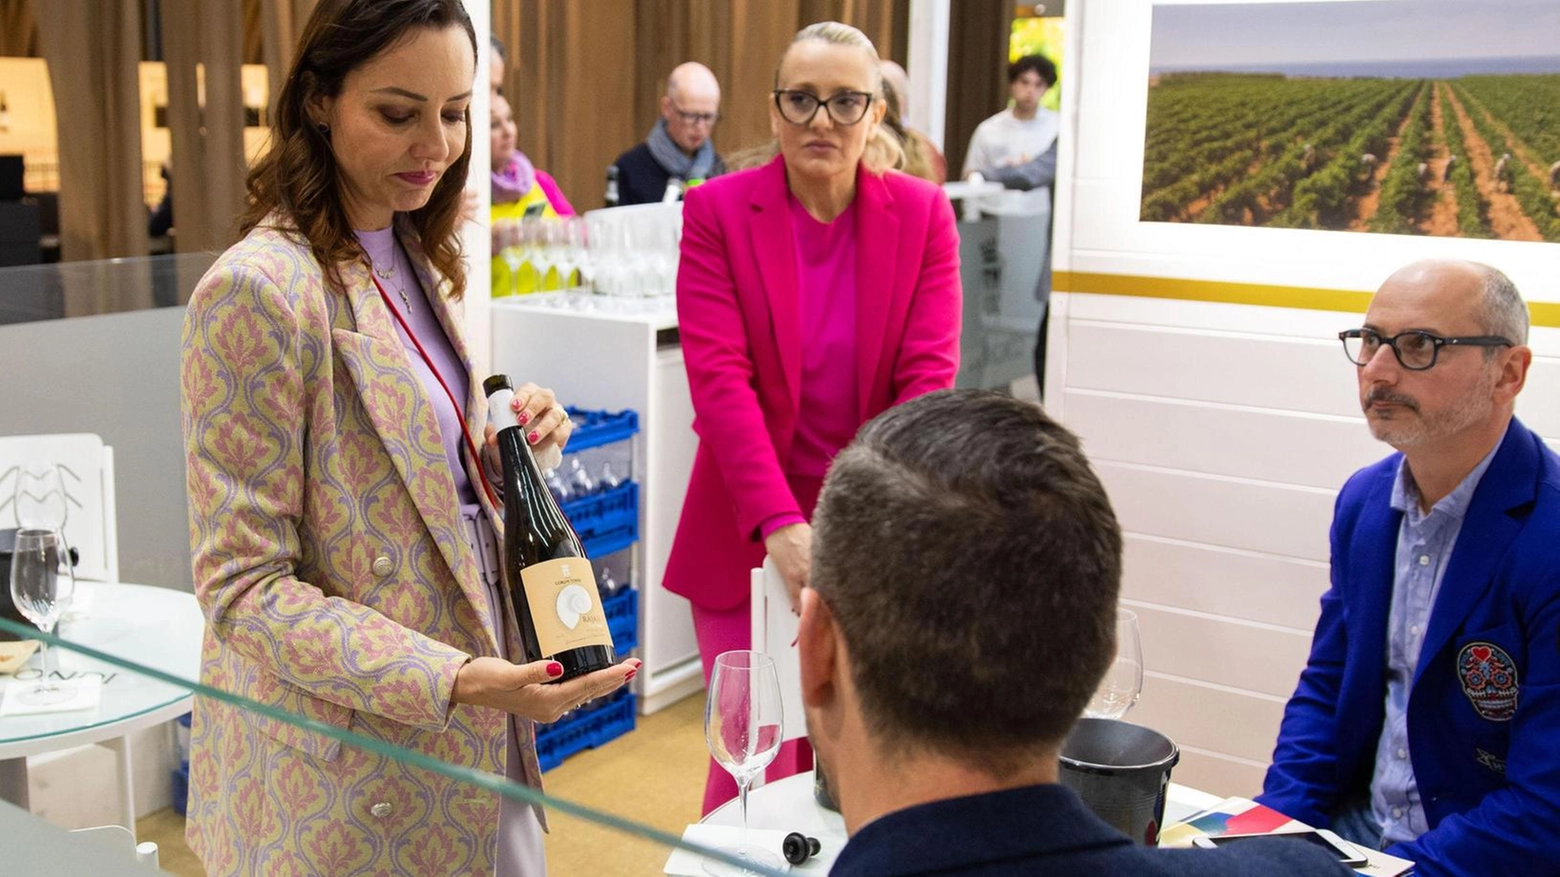 Il ministro Lollobrigida: "Il vino è storia e cultura. Eccellenze da difendere. Contrastiamo gli allarmismi"